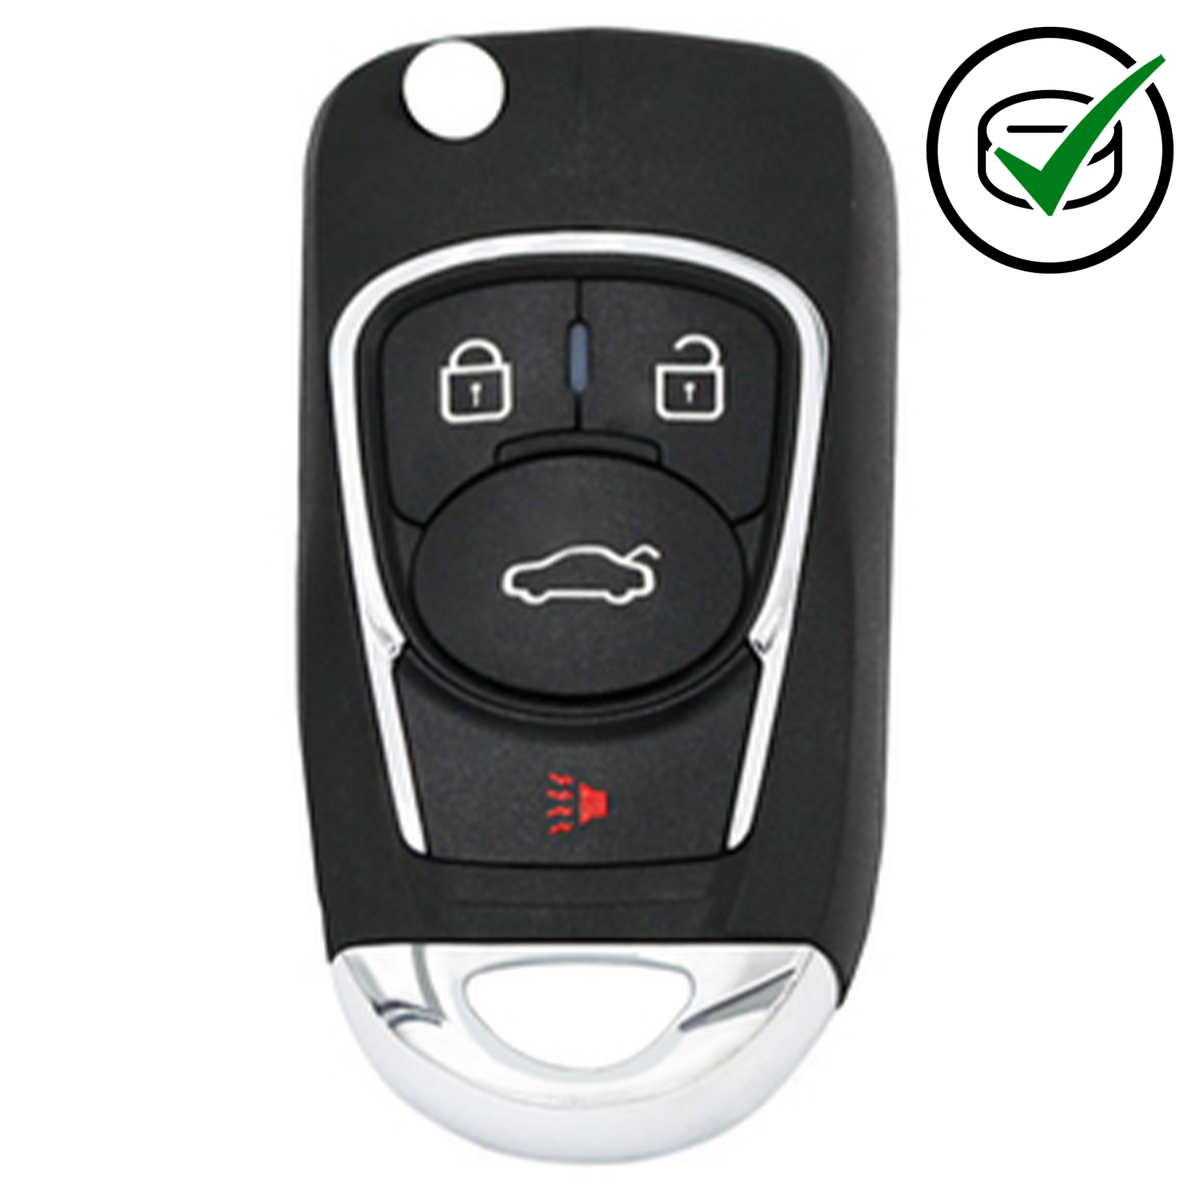 KD 900 Key remote 4 button GM Style